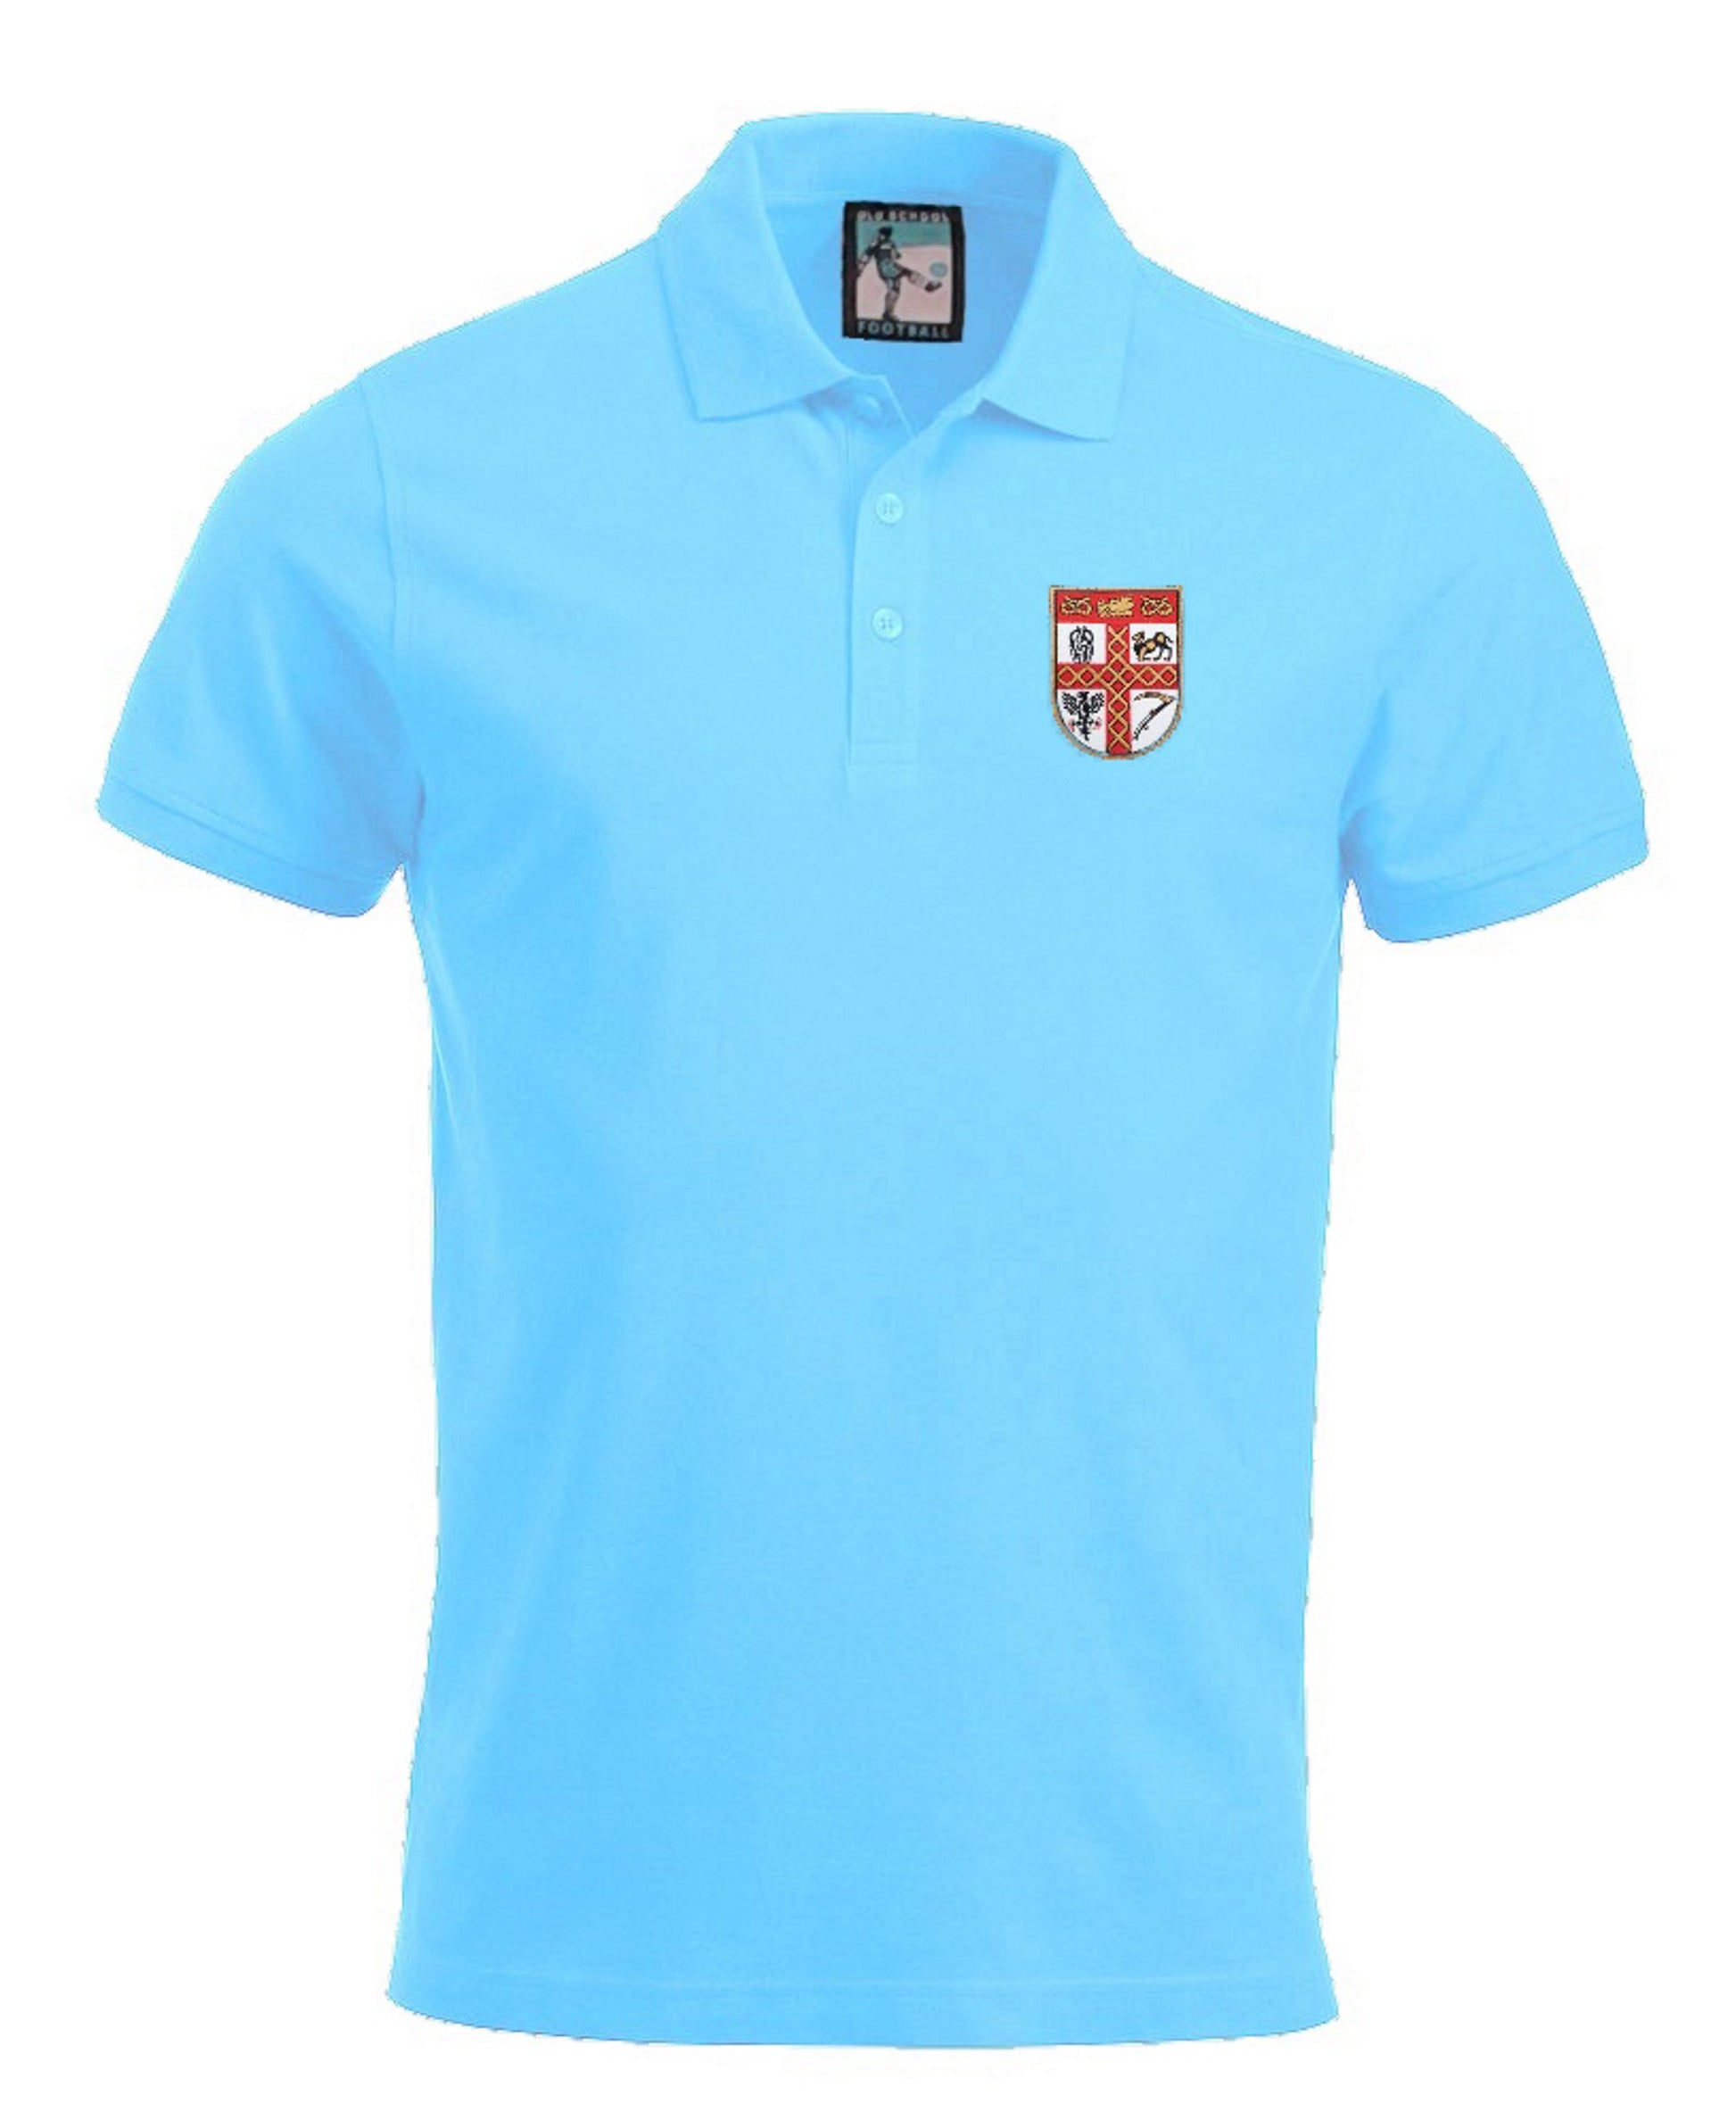 Stoke City Retro 1950s Football Polo Shirt - Polo